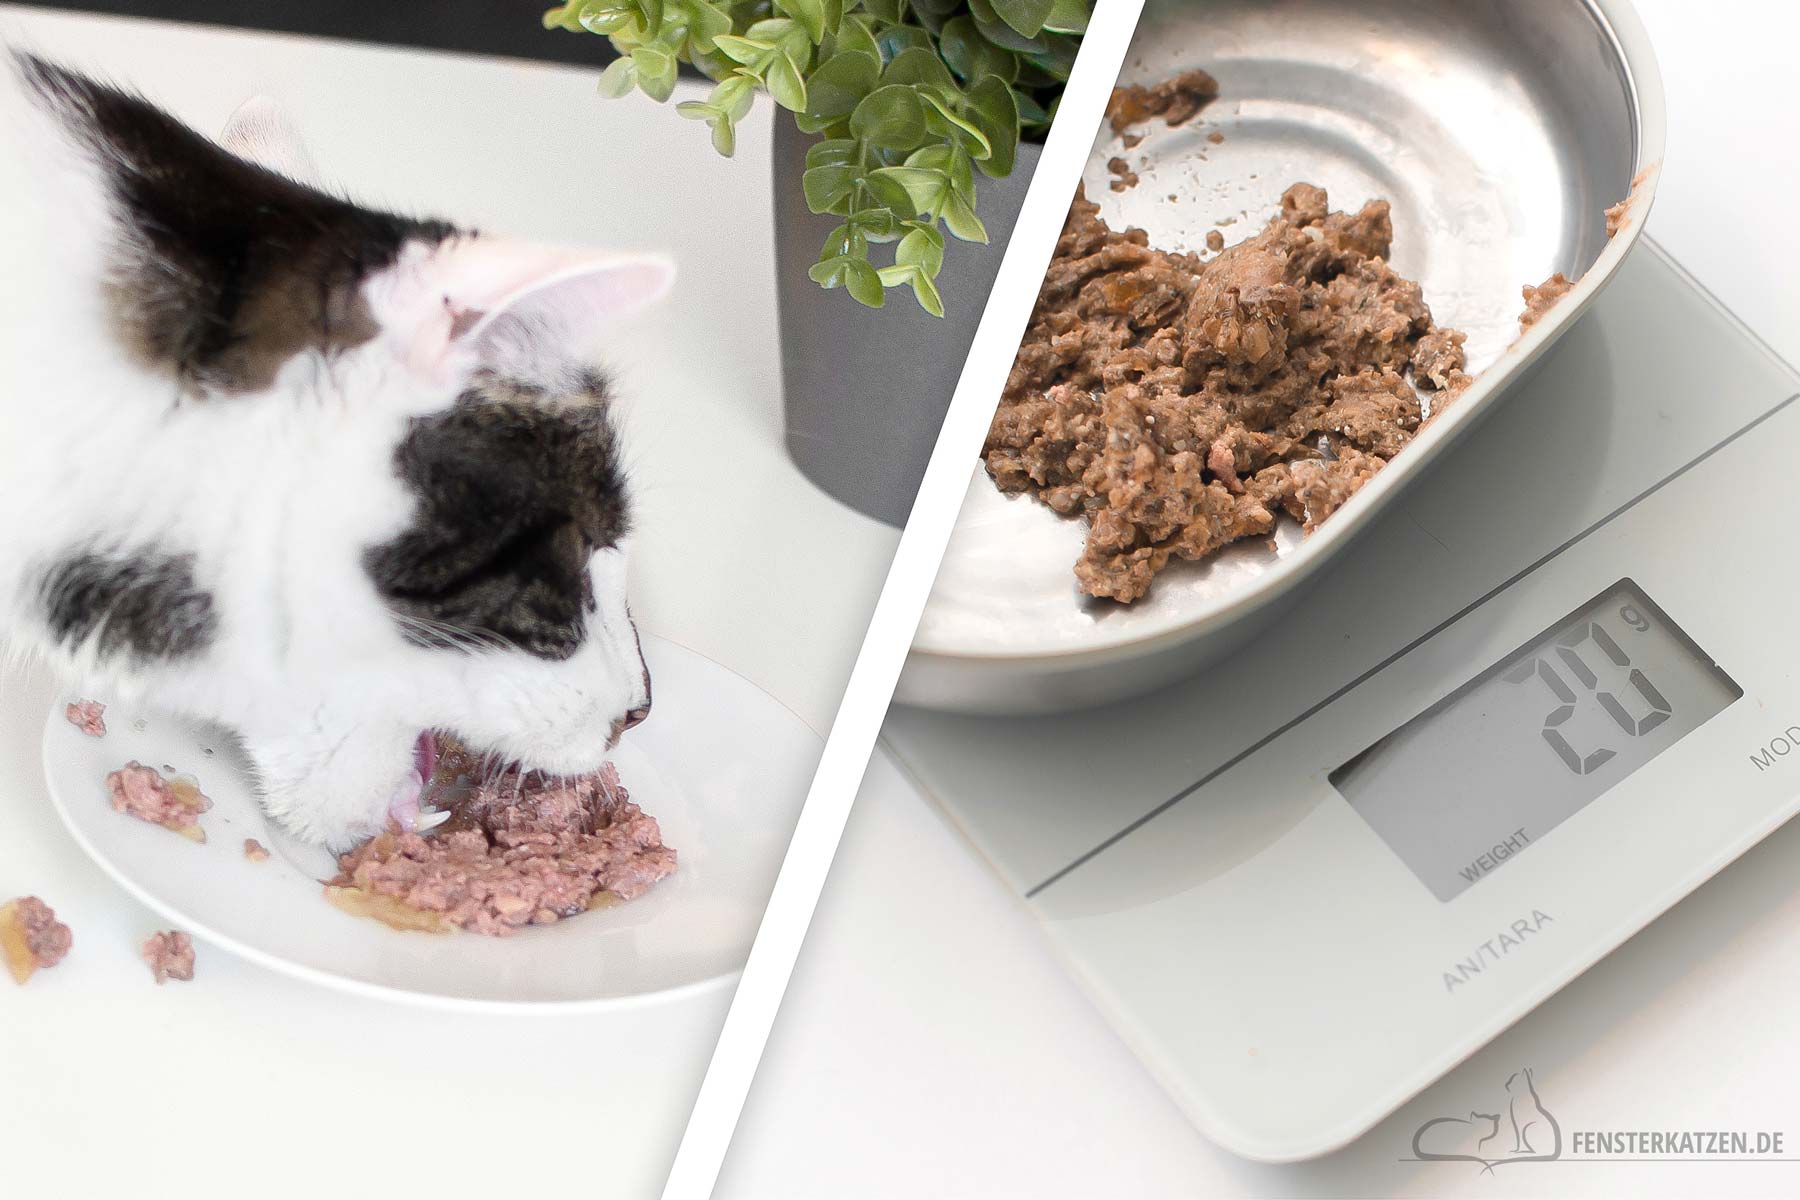 Fensterkatzen-Katzenblog-fuer-Katzenanfaenger-Katzenfutter-portioniert-vs-all-you-can-eat-Titelbild